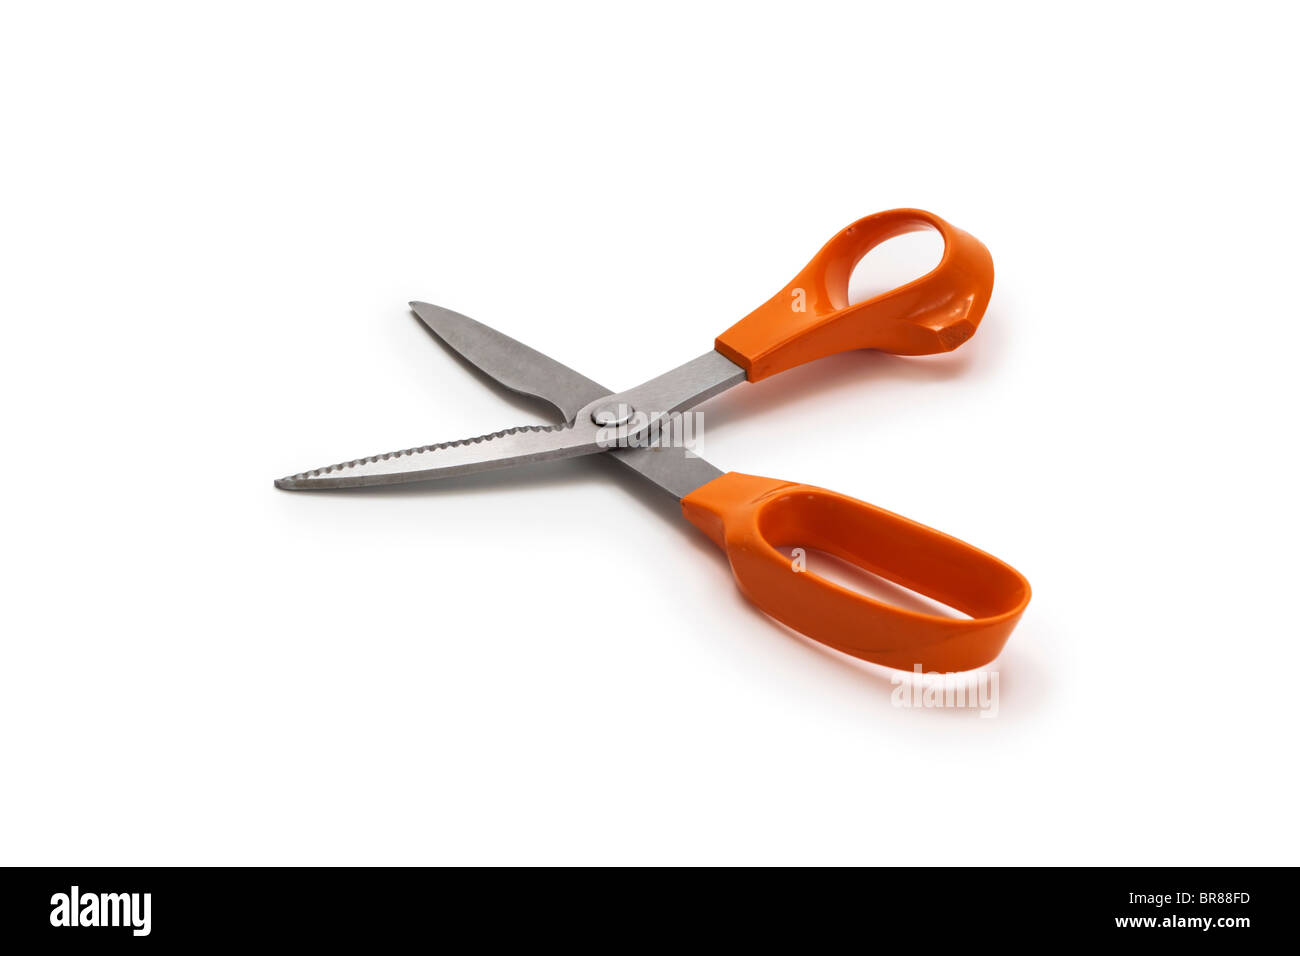 Kitchen scissors with orange plastic handles Stock Photo